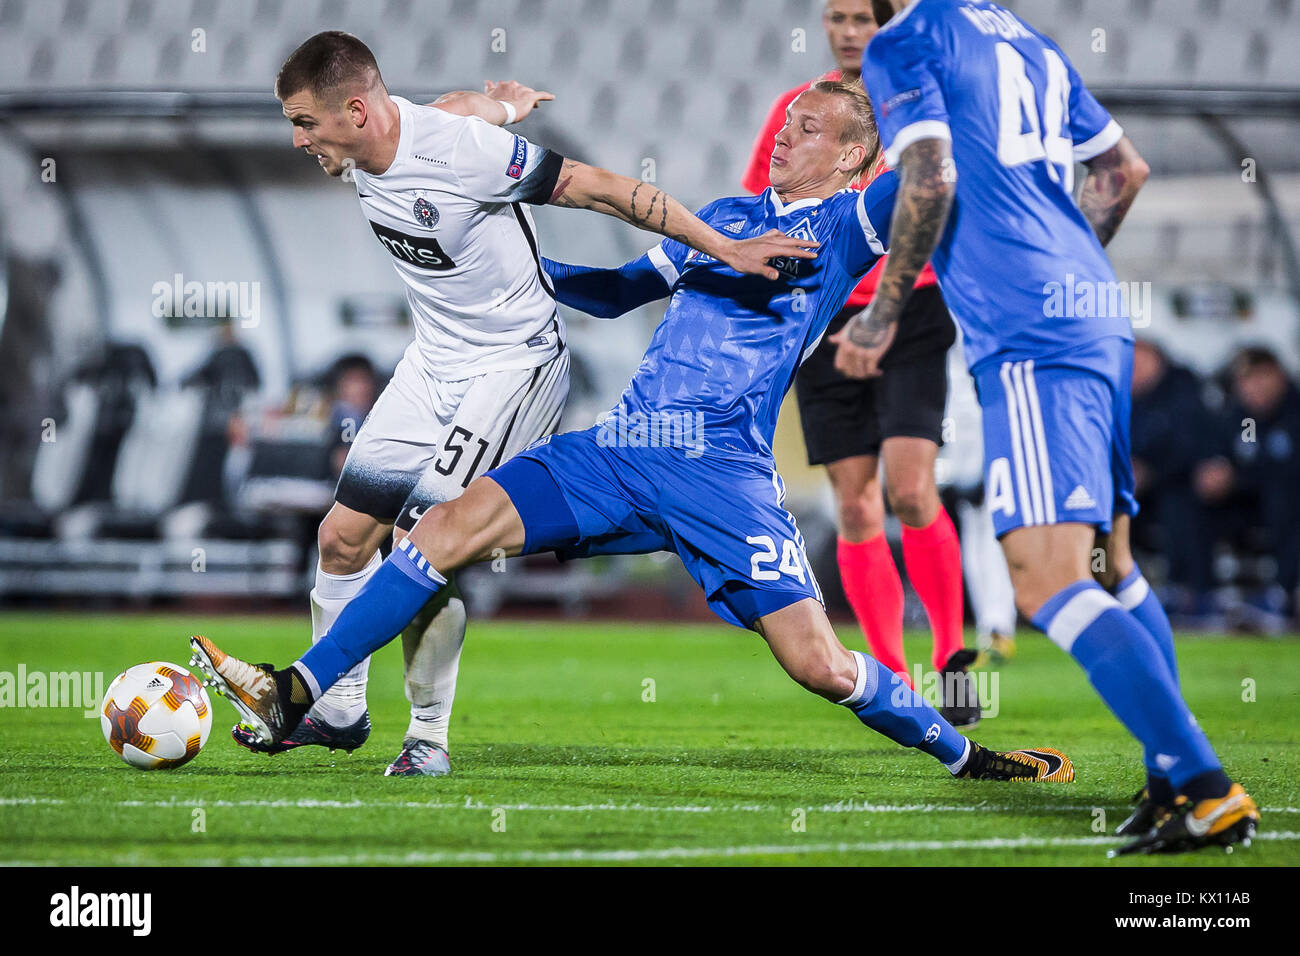 Ognjen Ozegovic of Partizan in action against Defender Domagoj Vida of Dynamo Kiev Stock Photo